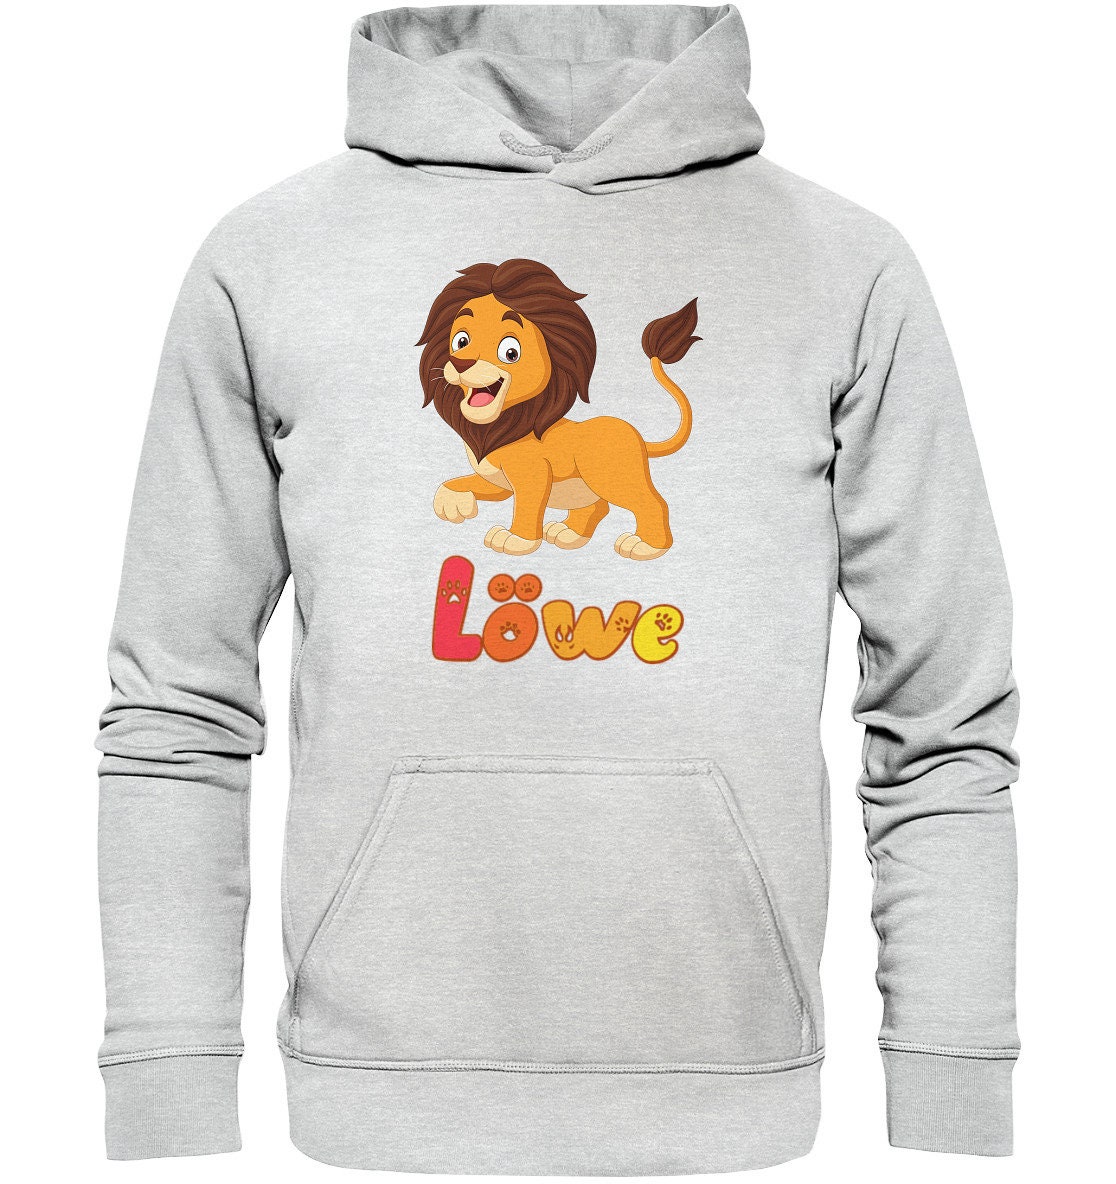 löwen der König hoodie